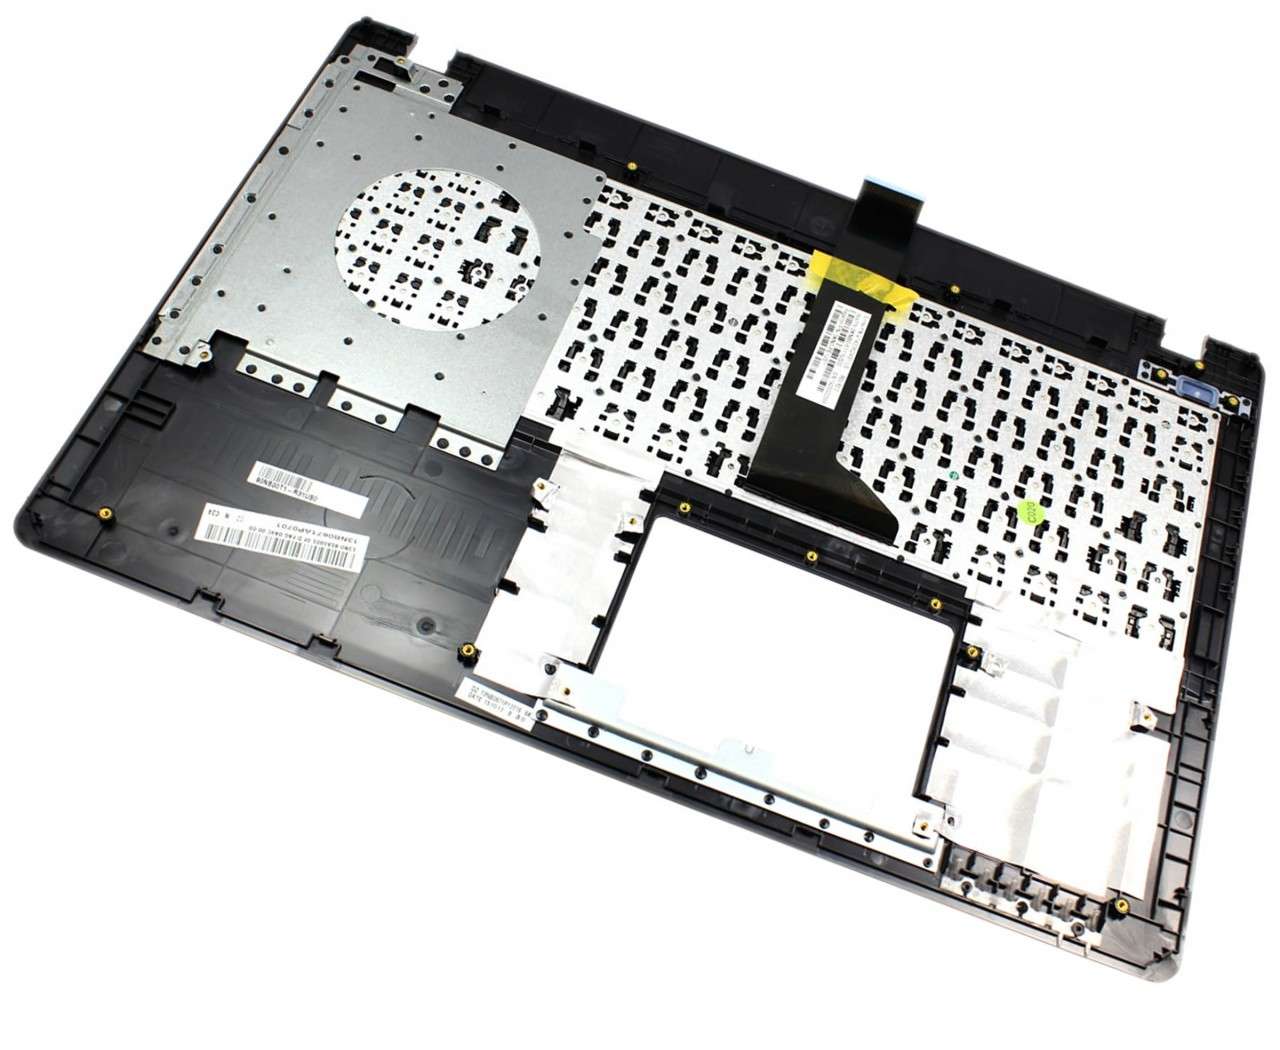 Tastatura Asus X550V neagra cu Palmrest argintiu